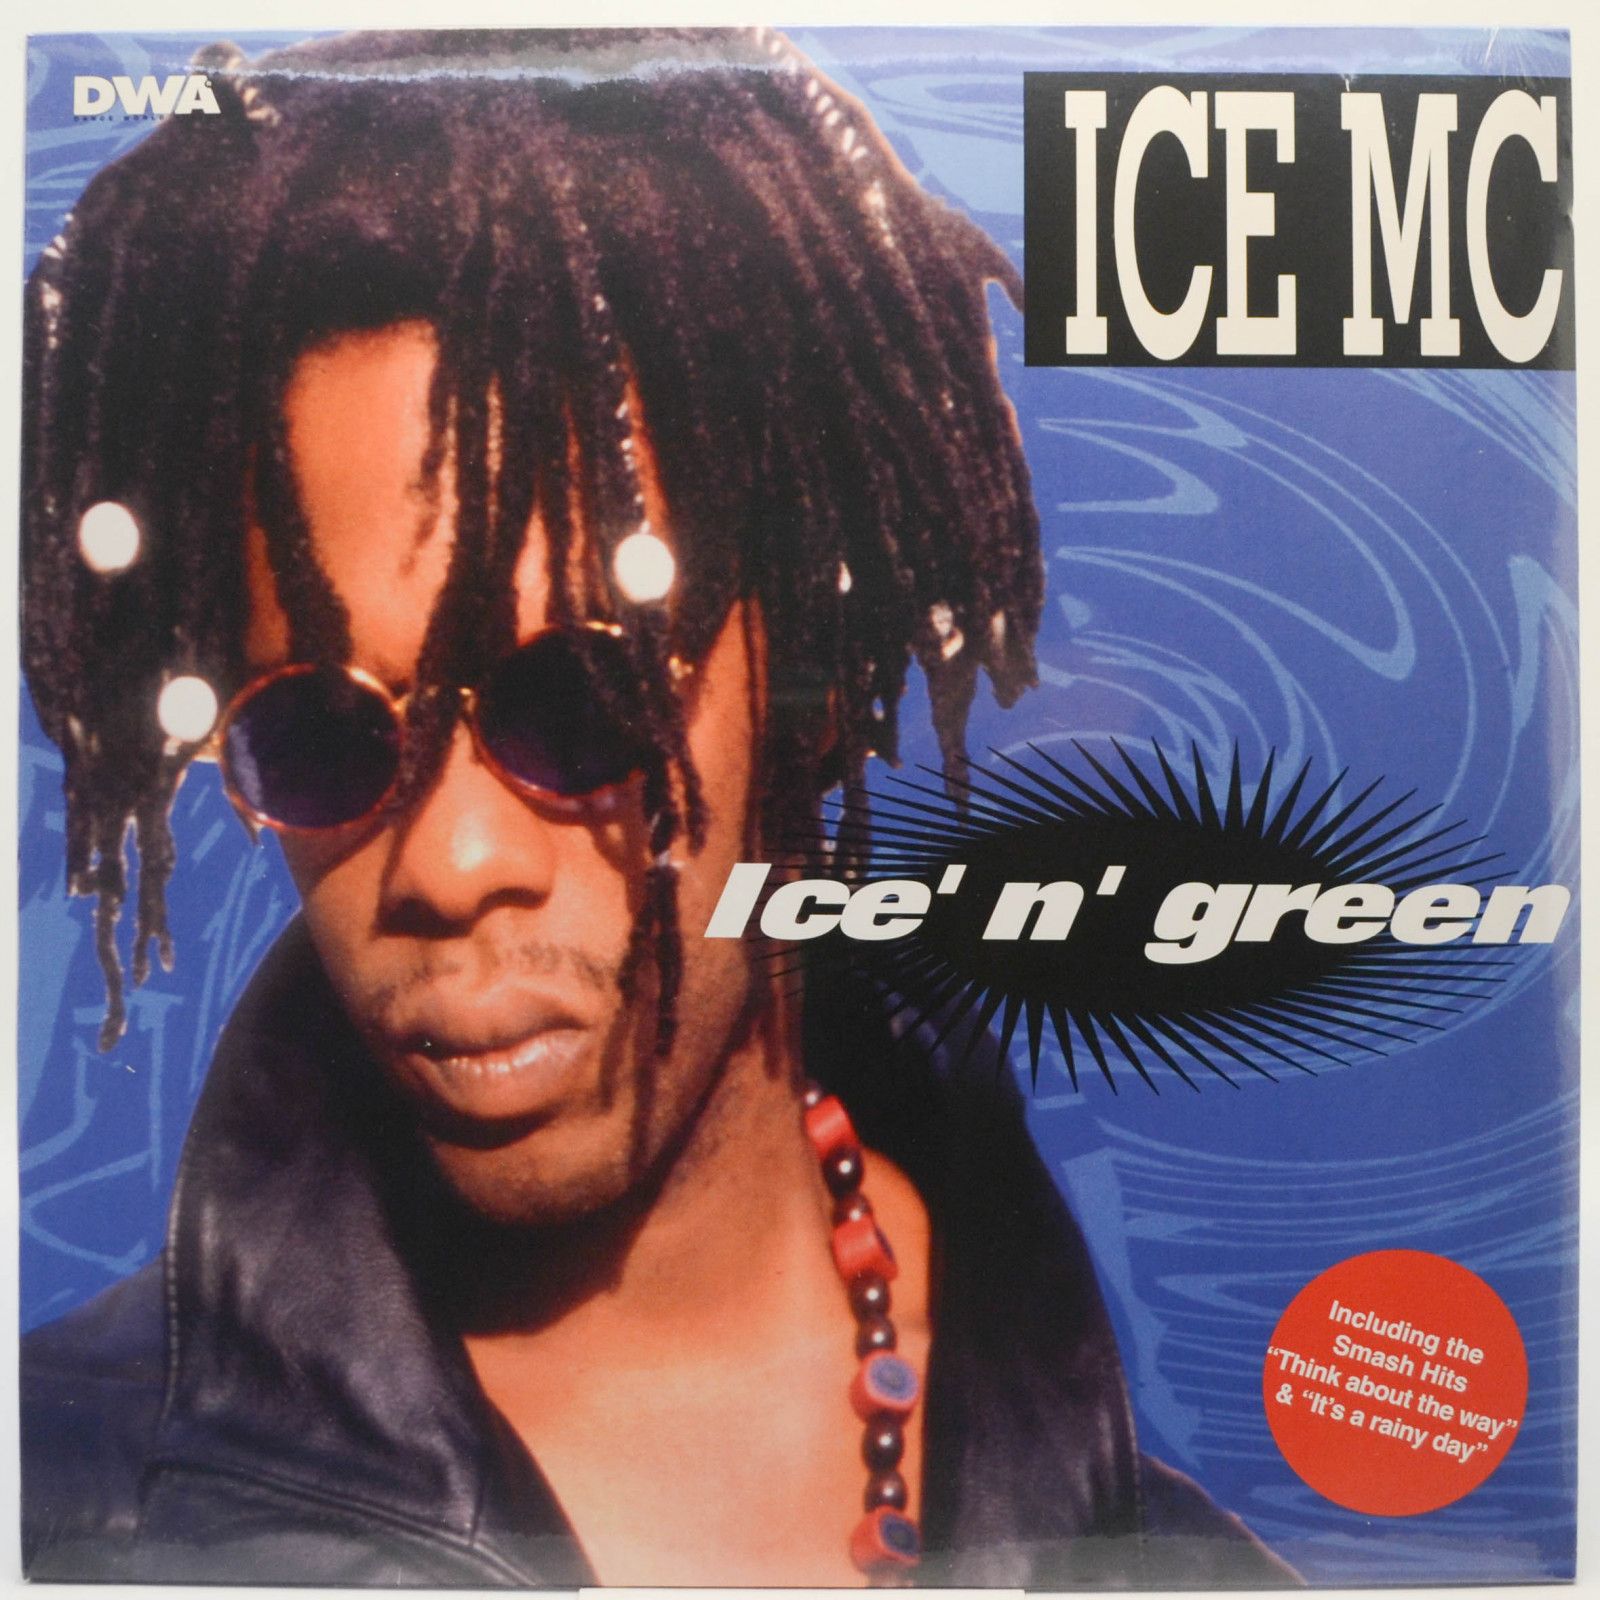 ICE MC — Ice' N' Green, 1994